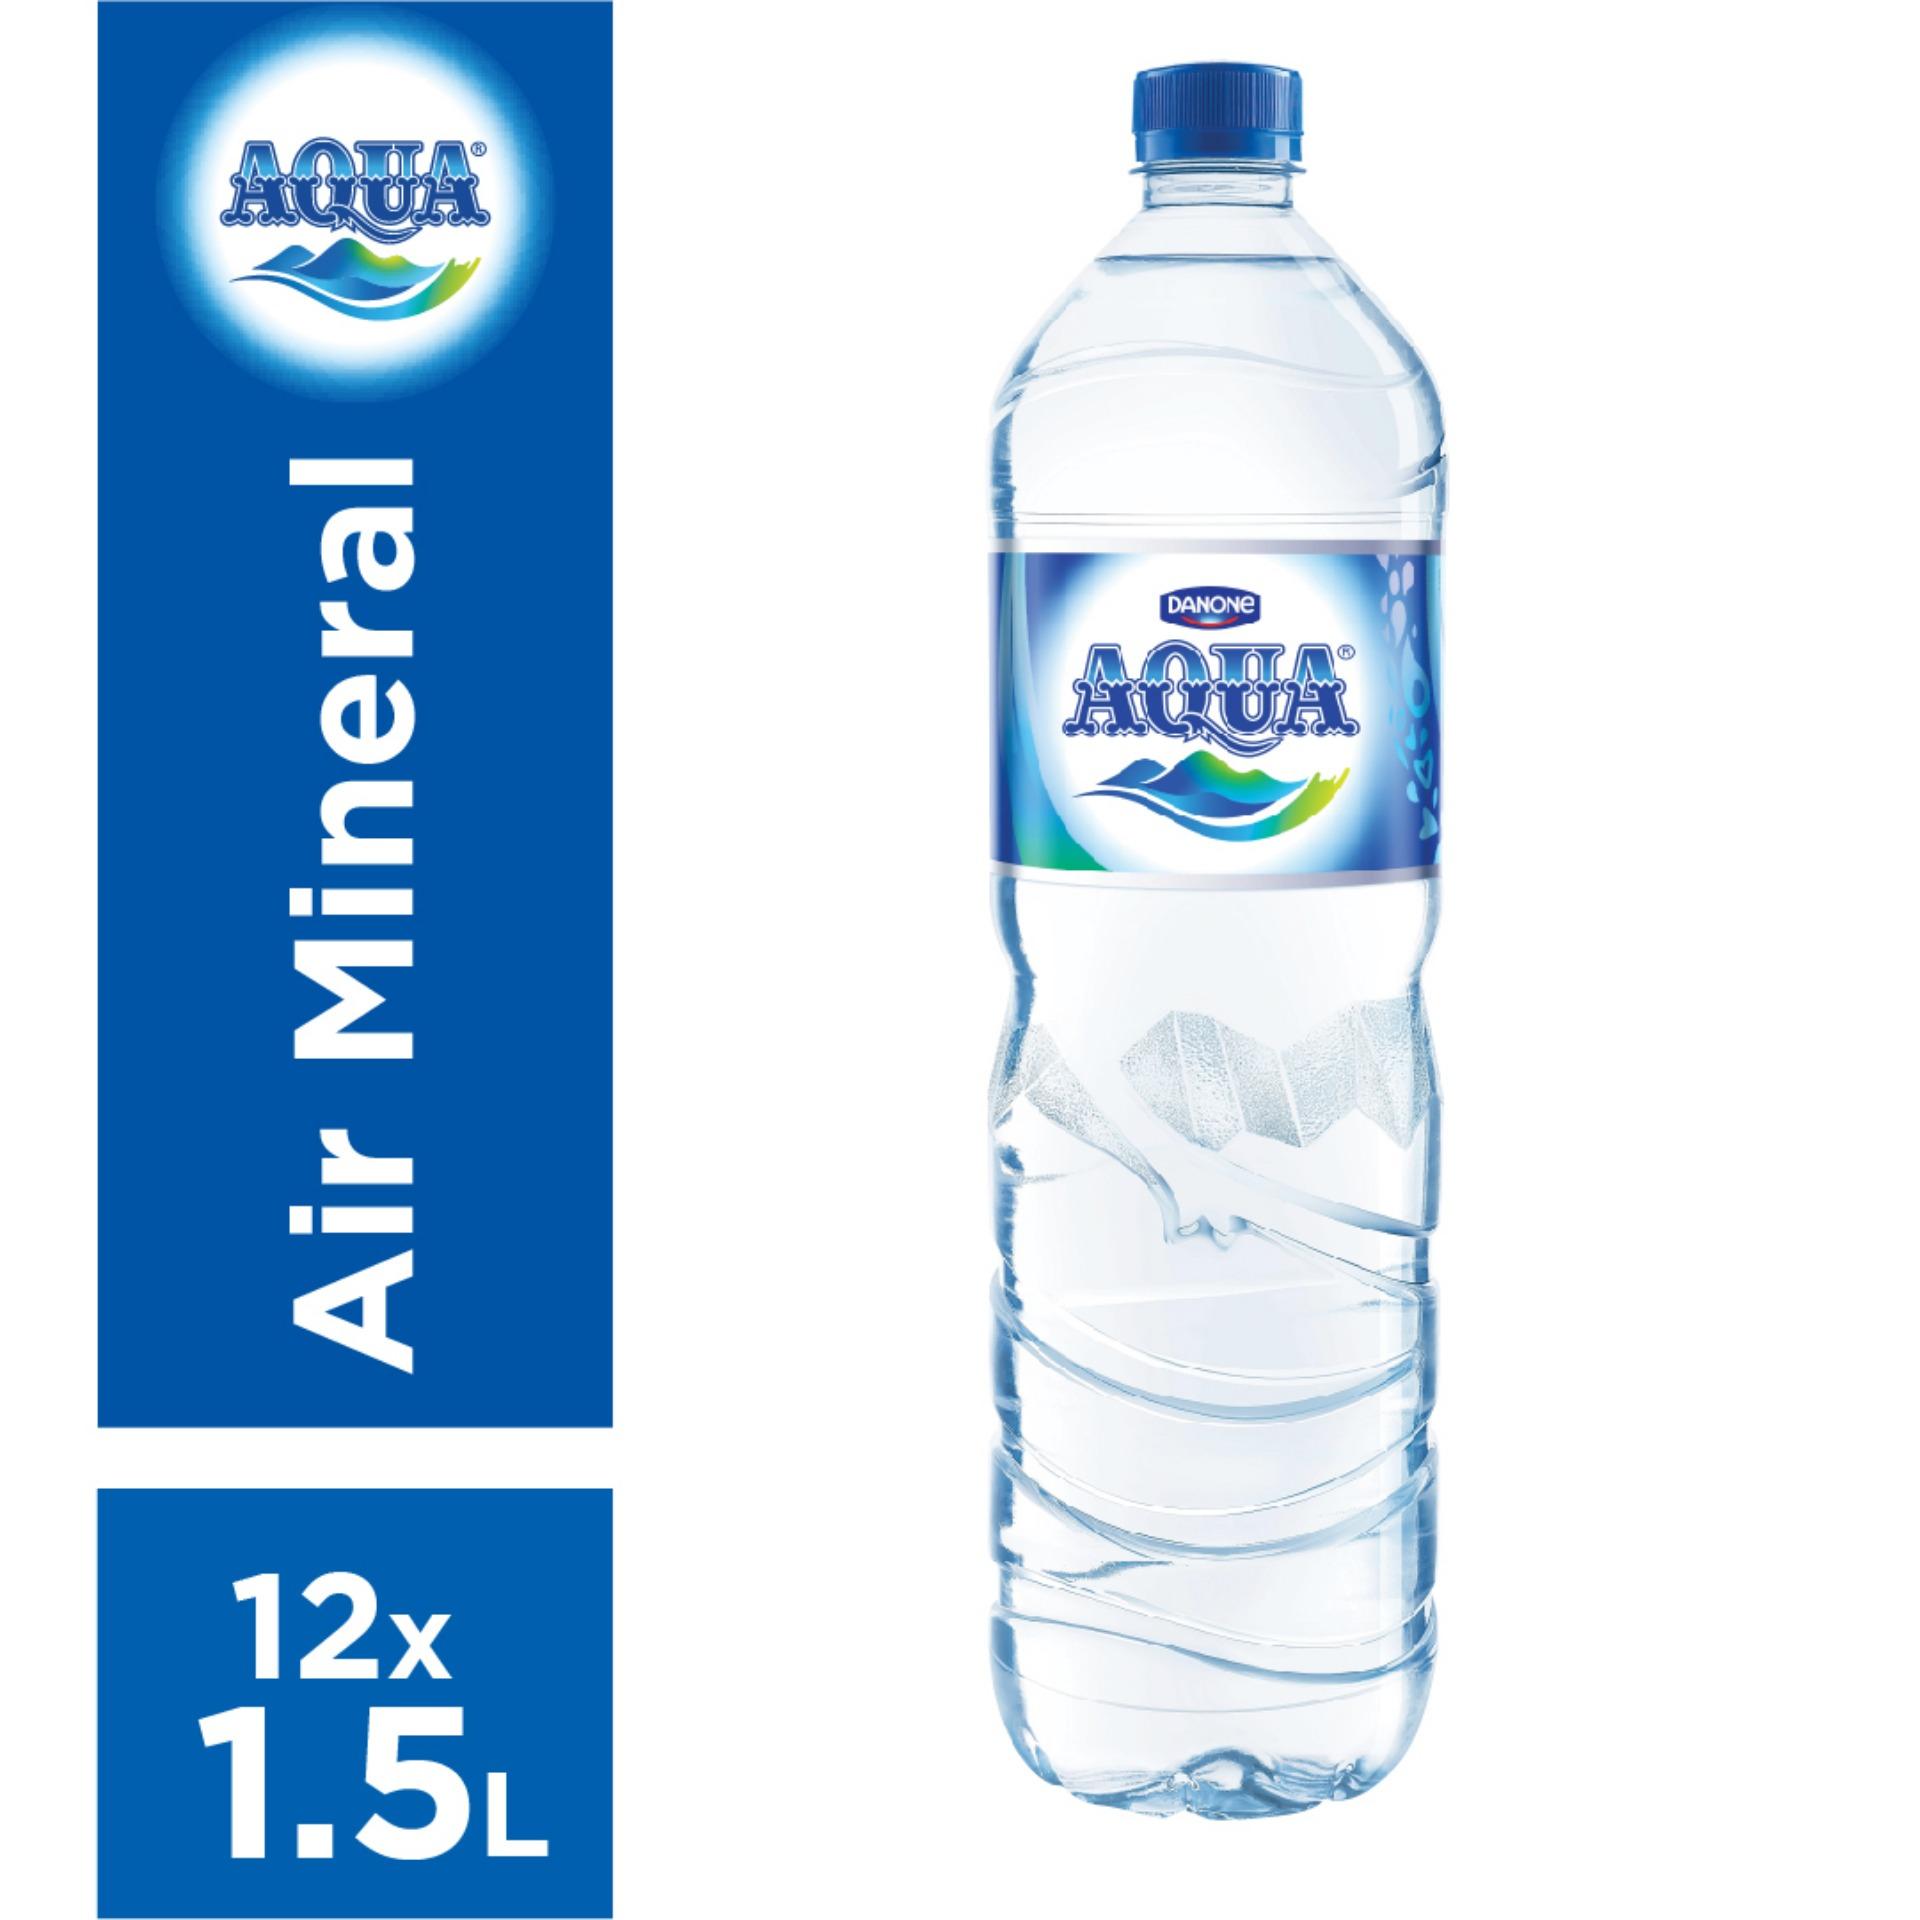 Sketsa Gambar  Botol Aqua  Terbaru  Kumpulan Sketsa Gambar 